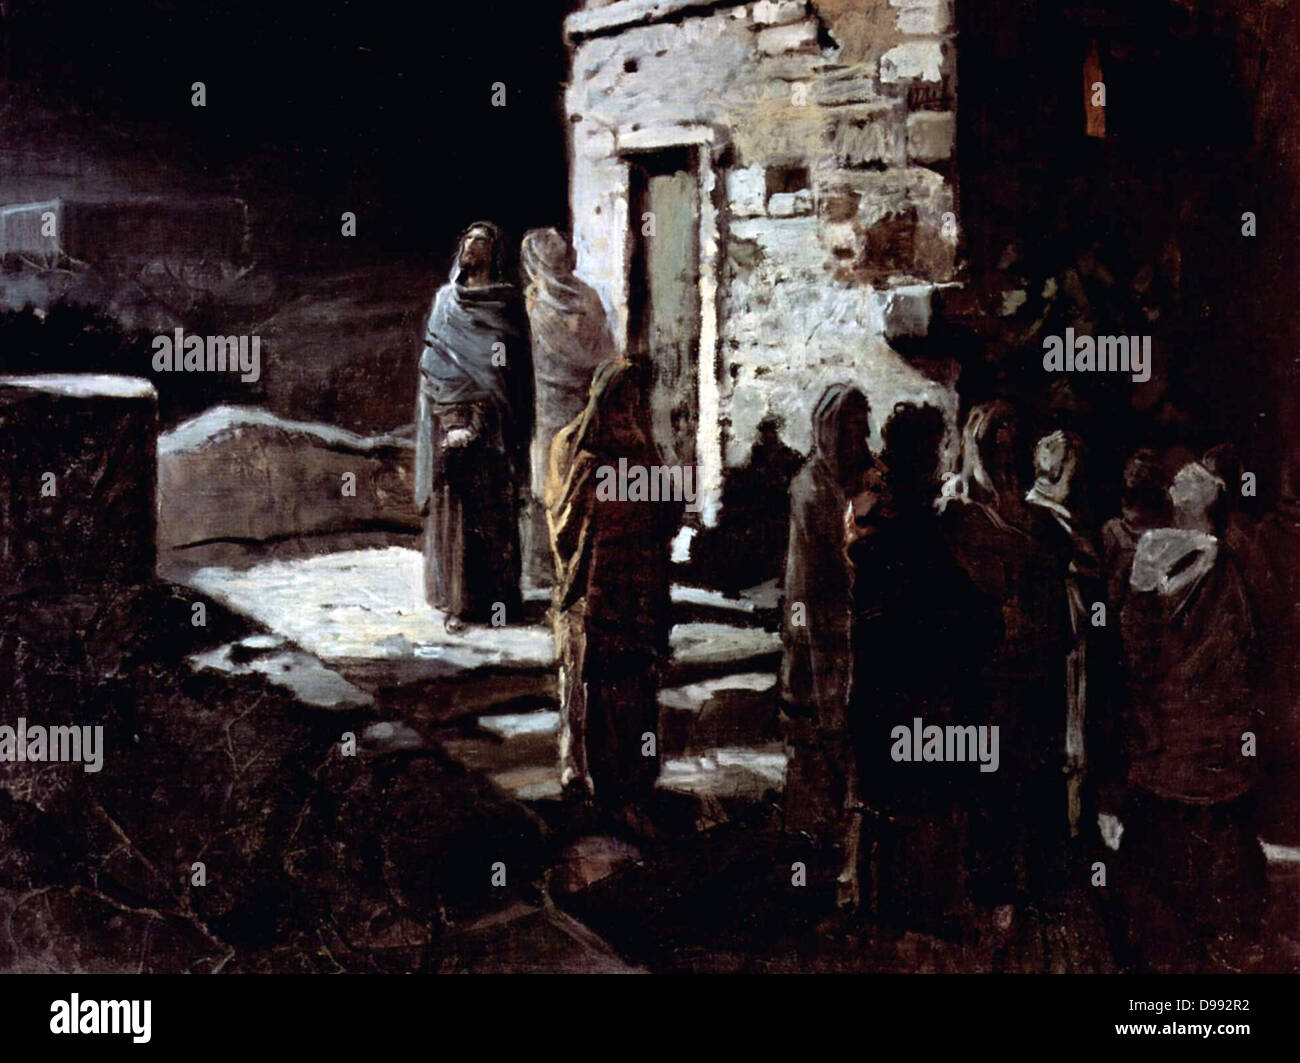 Cristo pregando nel giardino del Getsemani", 1888. Olio su tela. Nikolai Ge (1831-1894) artista russo. La religione cristiana Testamento Nuovi discepoli di Gesù Foto Stock